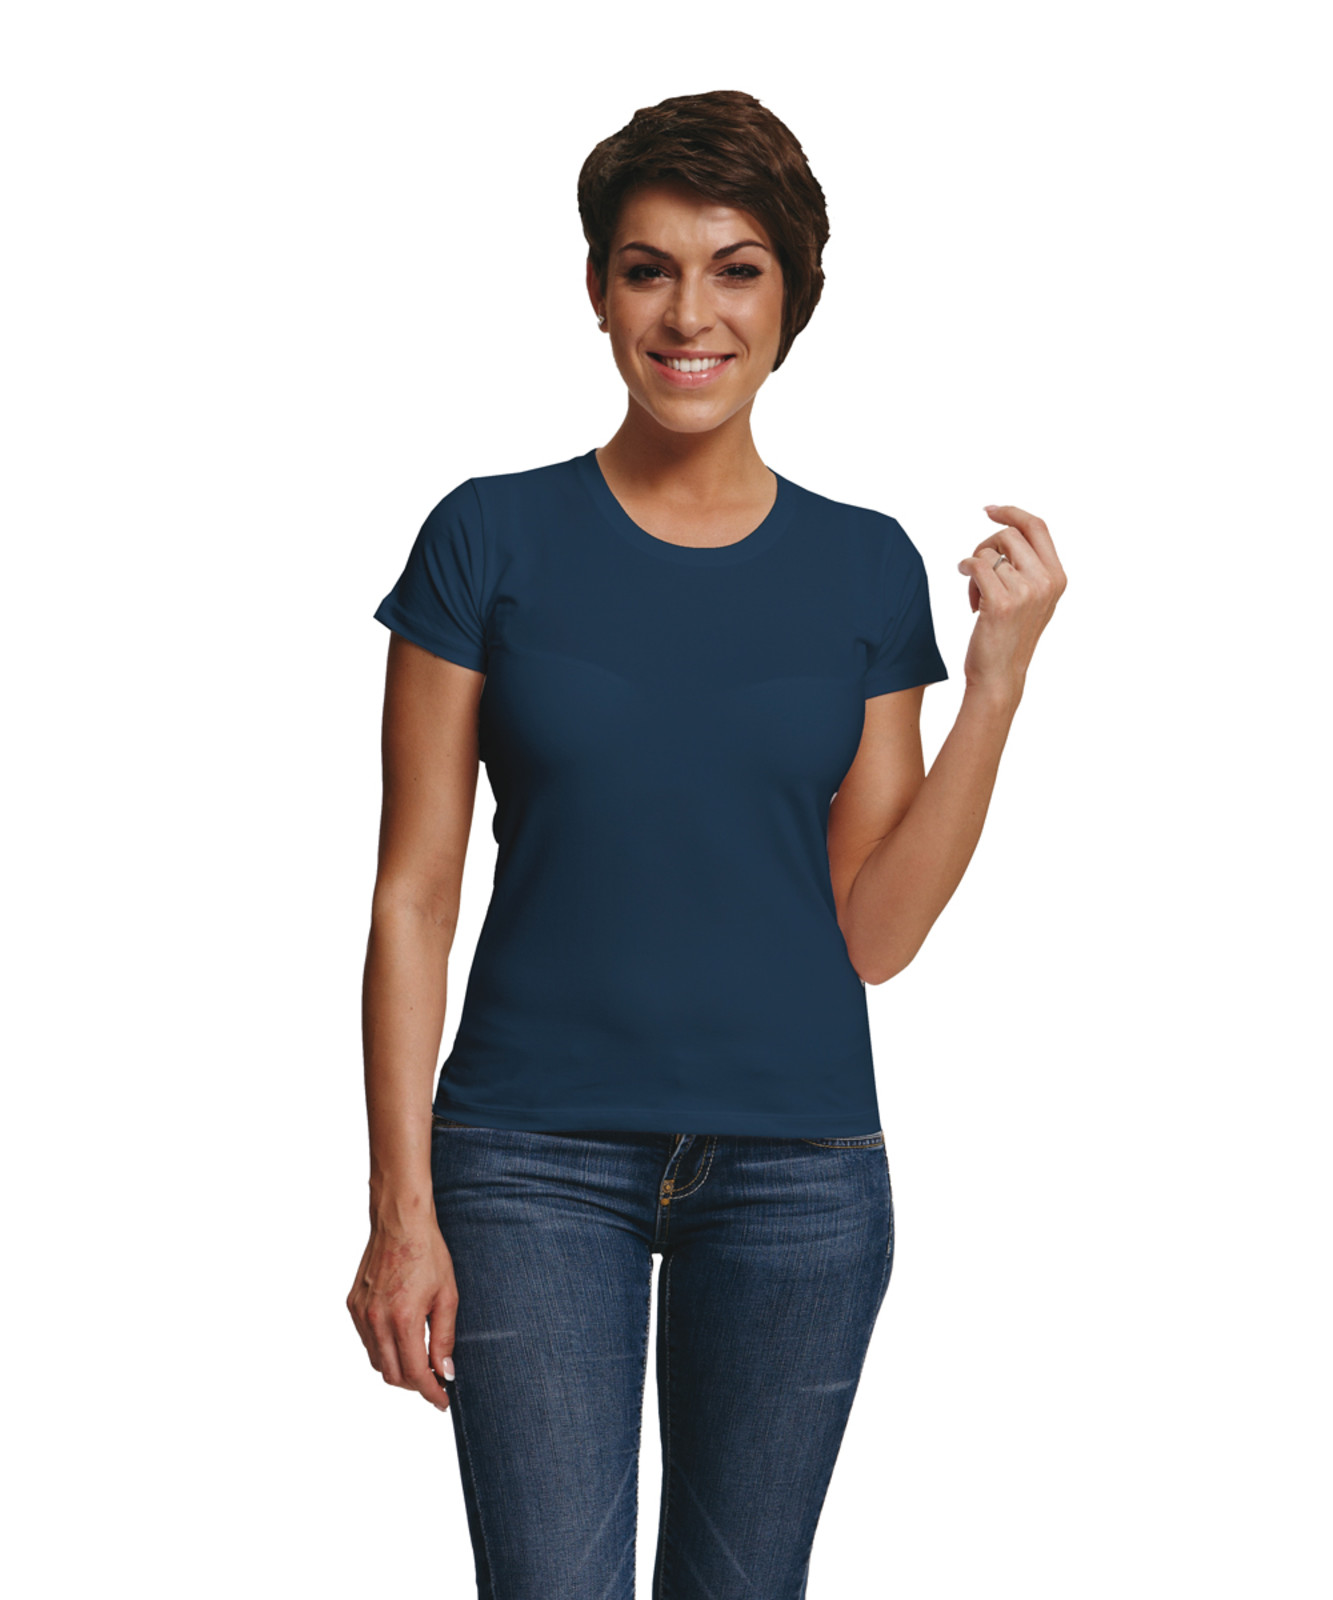 Dámske tričko s krátkym rukávom Surma Lady - veľkosť: S, farba: navy